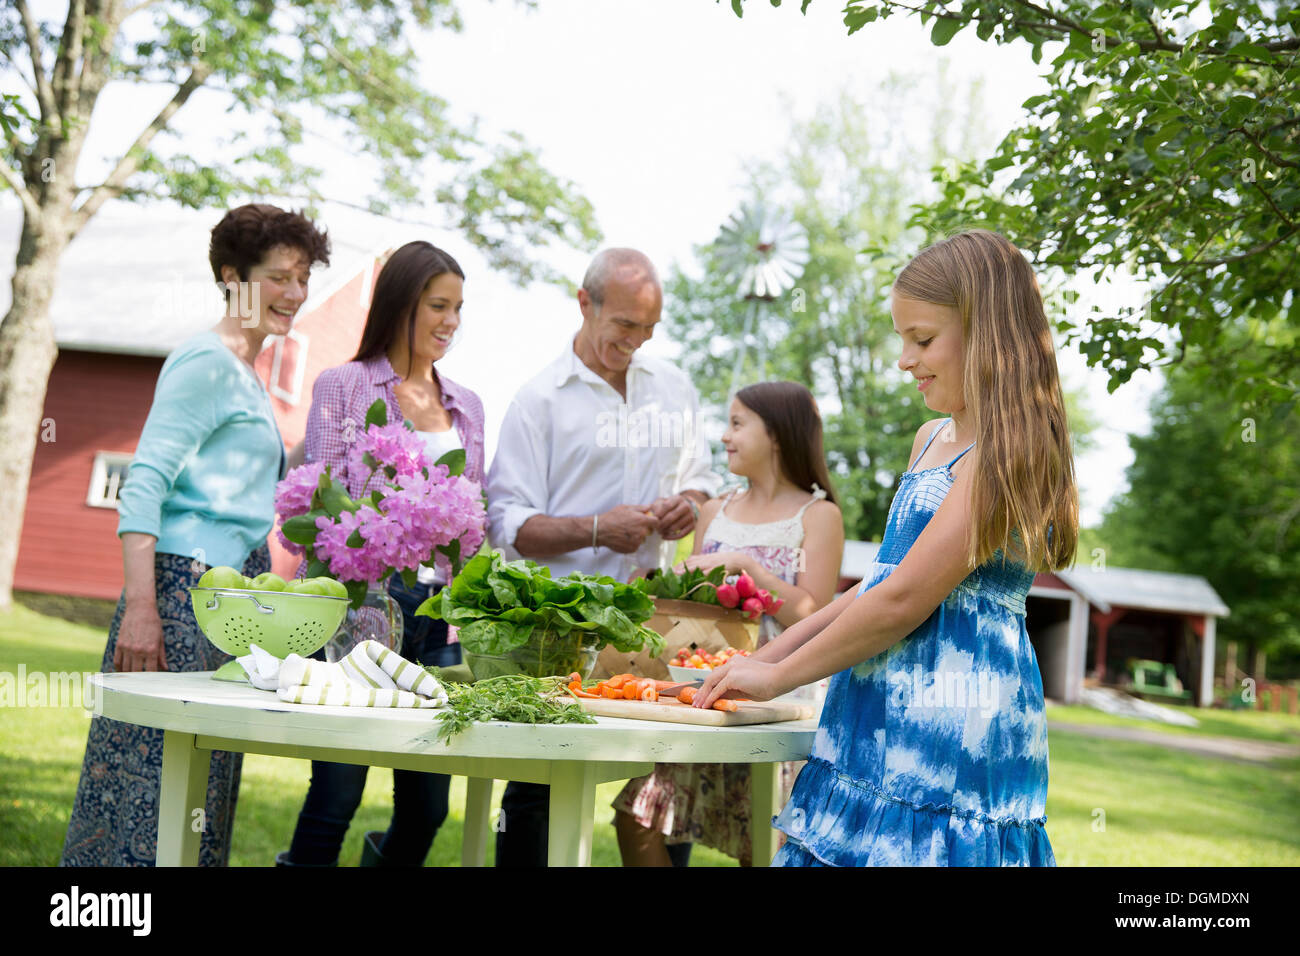 Familienfest. Fünf Personen Tisch bereitet frische Salate Obst Partei zwei Mädchen, eine junge Frau und ein älteres Paar. Stockfoto